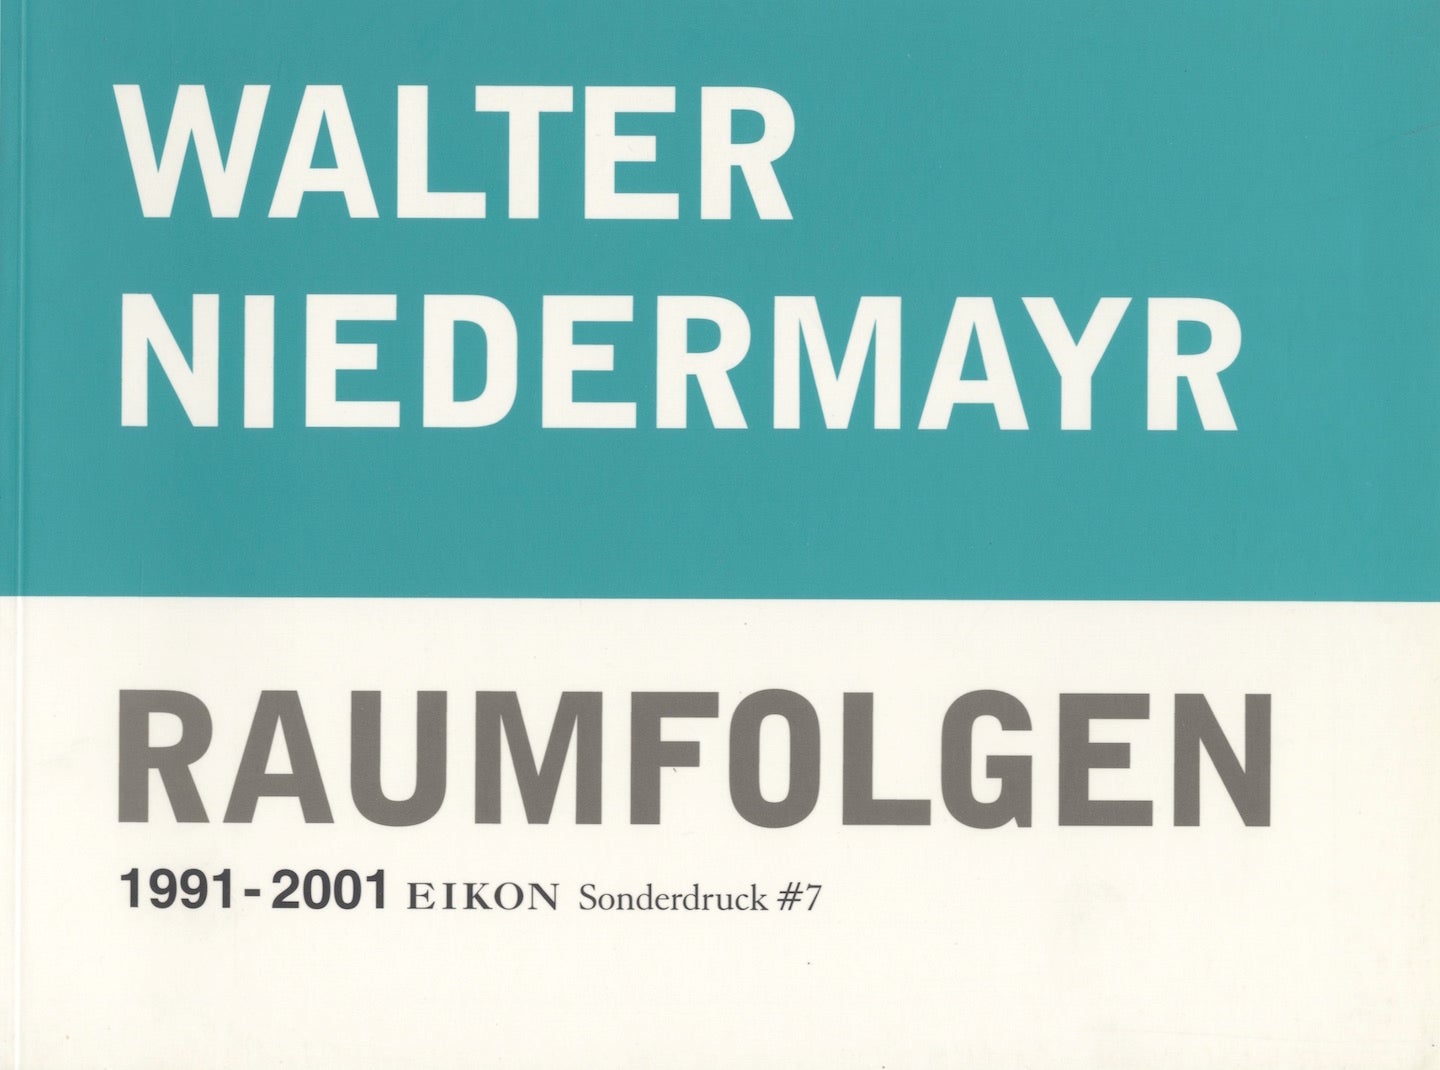 Walter Niedermayr: Raumfolgen 1991-2001 (Eikon Sonderdruck #7)